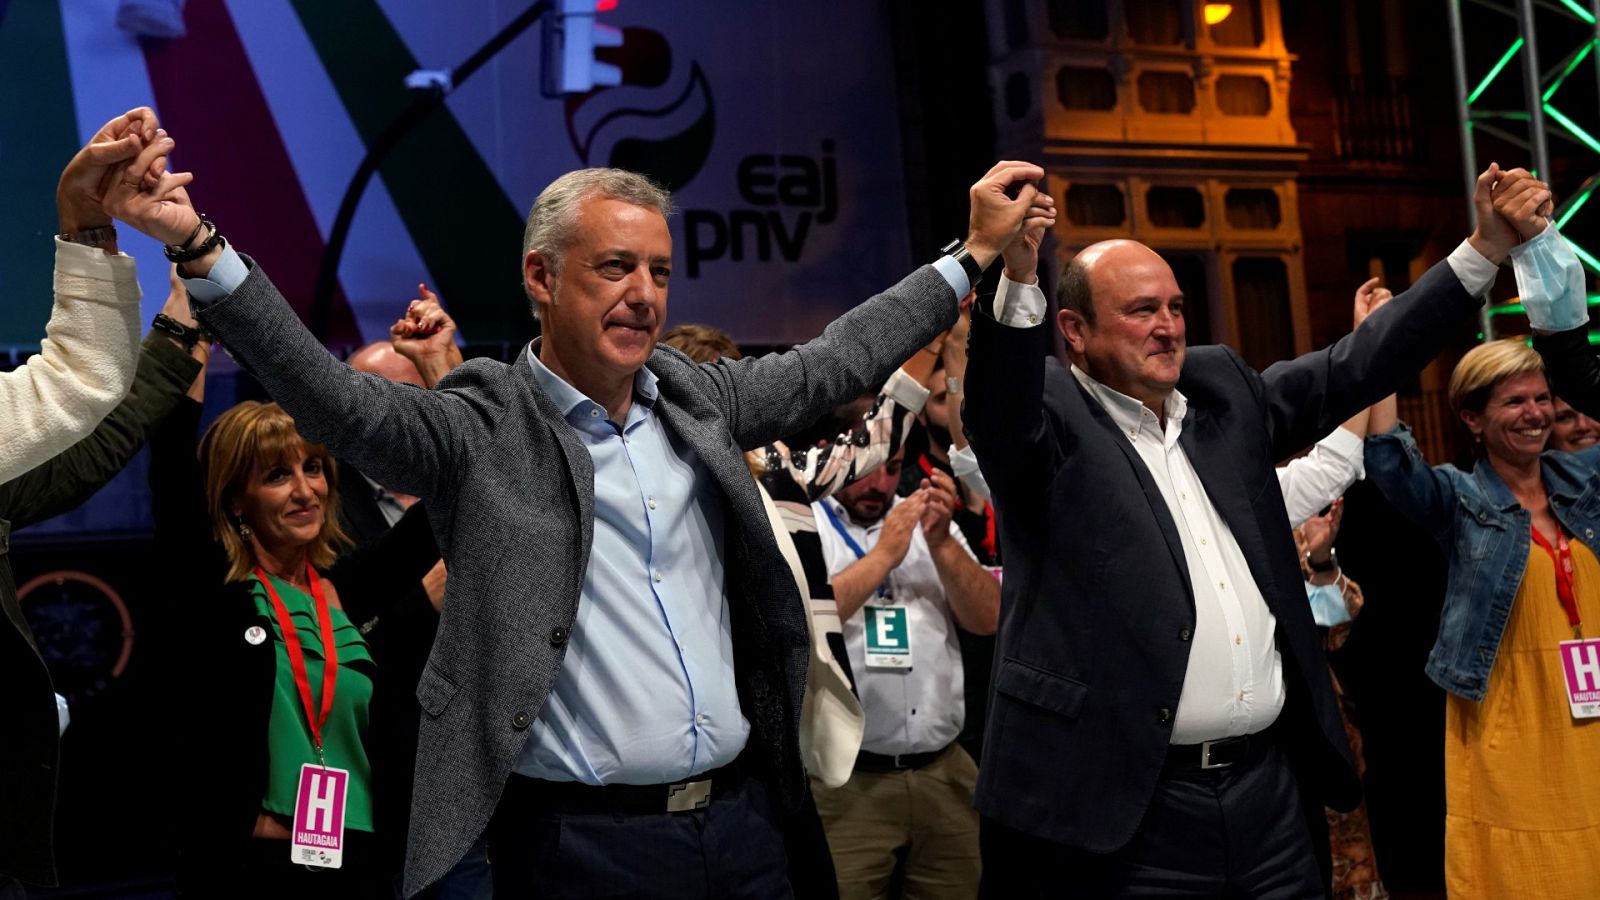 Elecciones vascas: Urkullu se muestra "satisfecho" tras conseguir tres esca�os m�s que en 2016